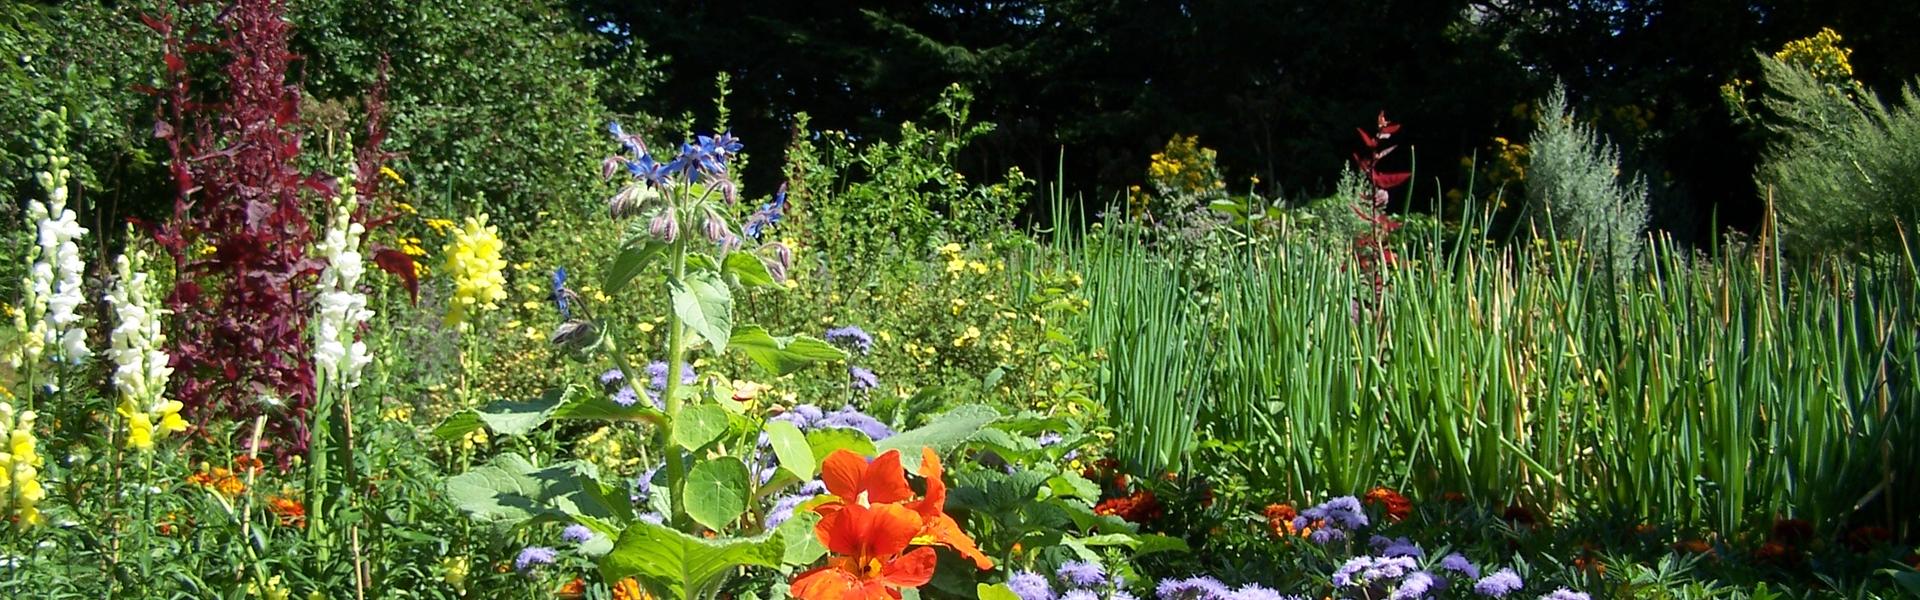 Ogród z kolorowymi kwiatami i ziołami.